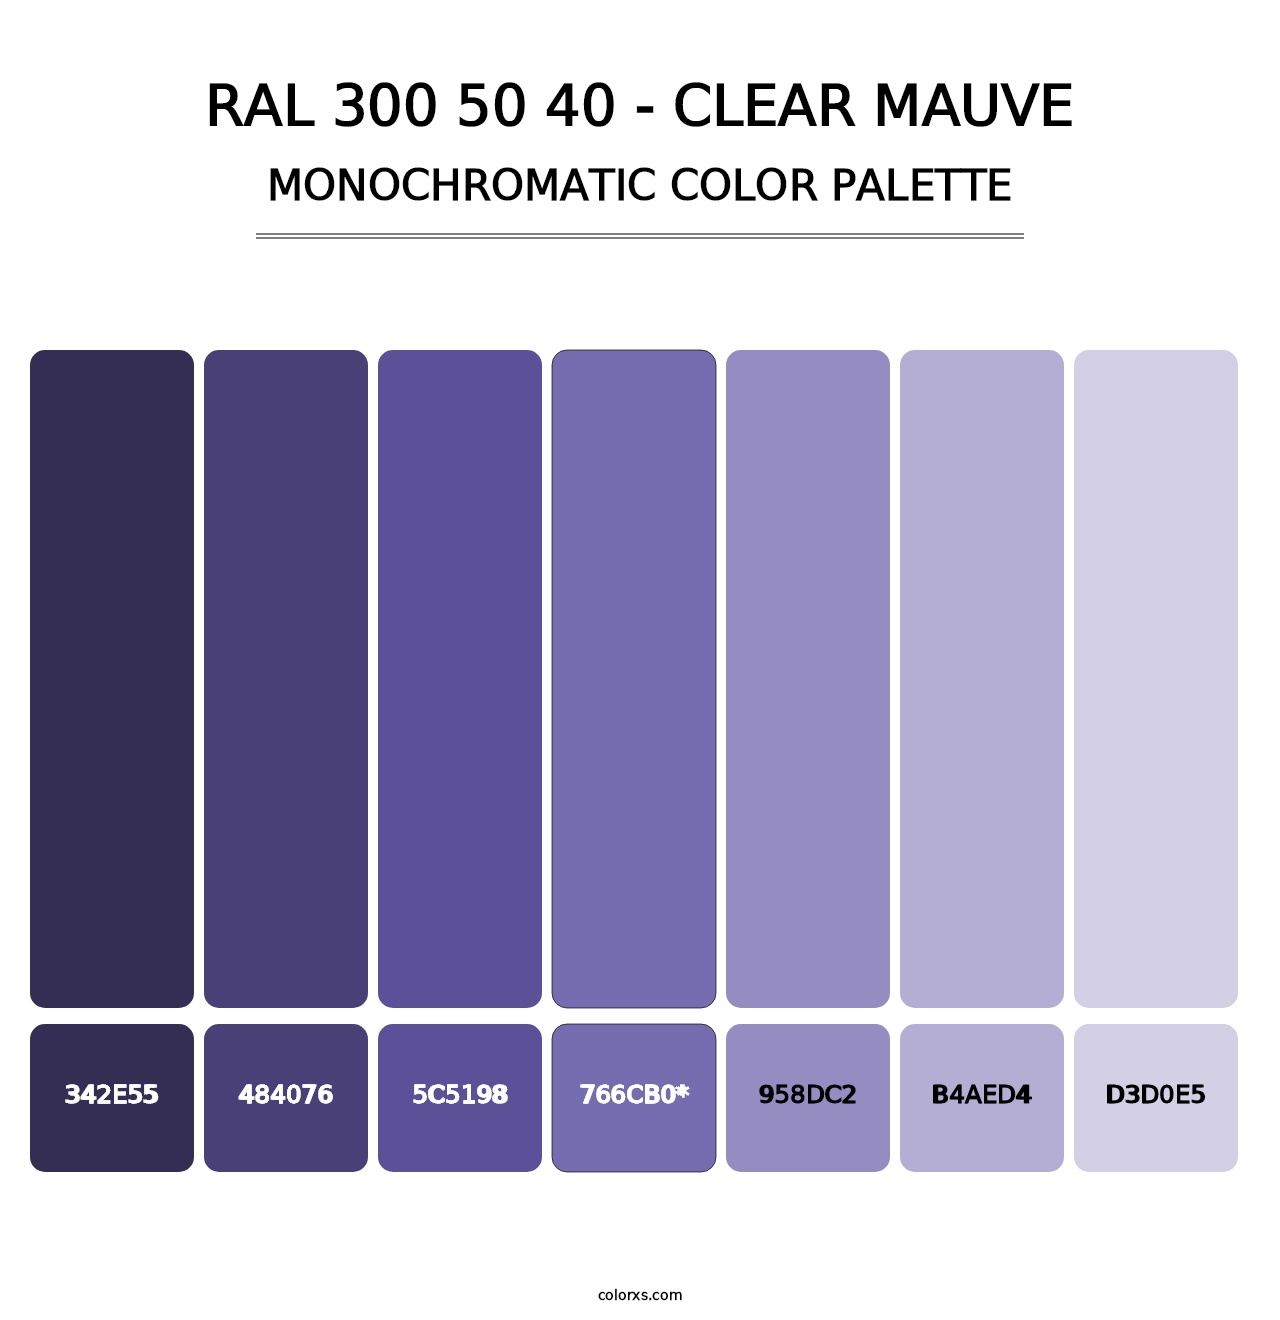 RAL 300 50 40 - Clear Mauve - Monochromatic Color Palette